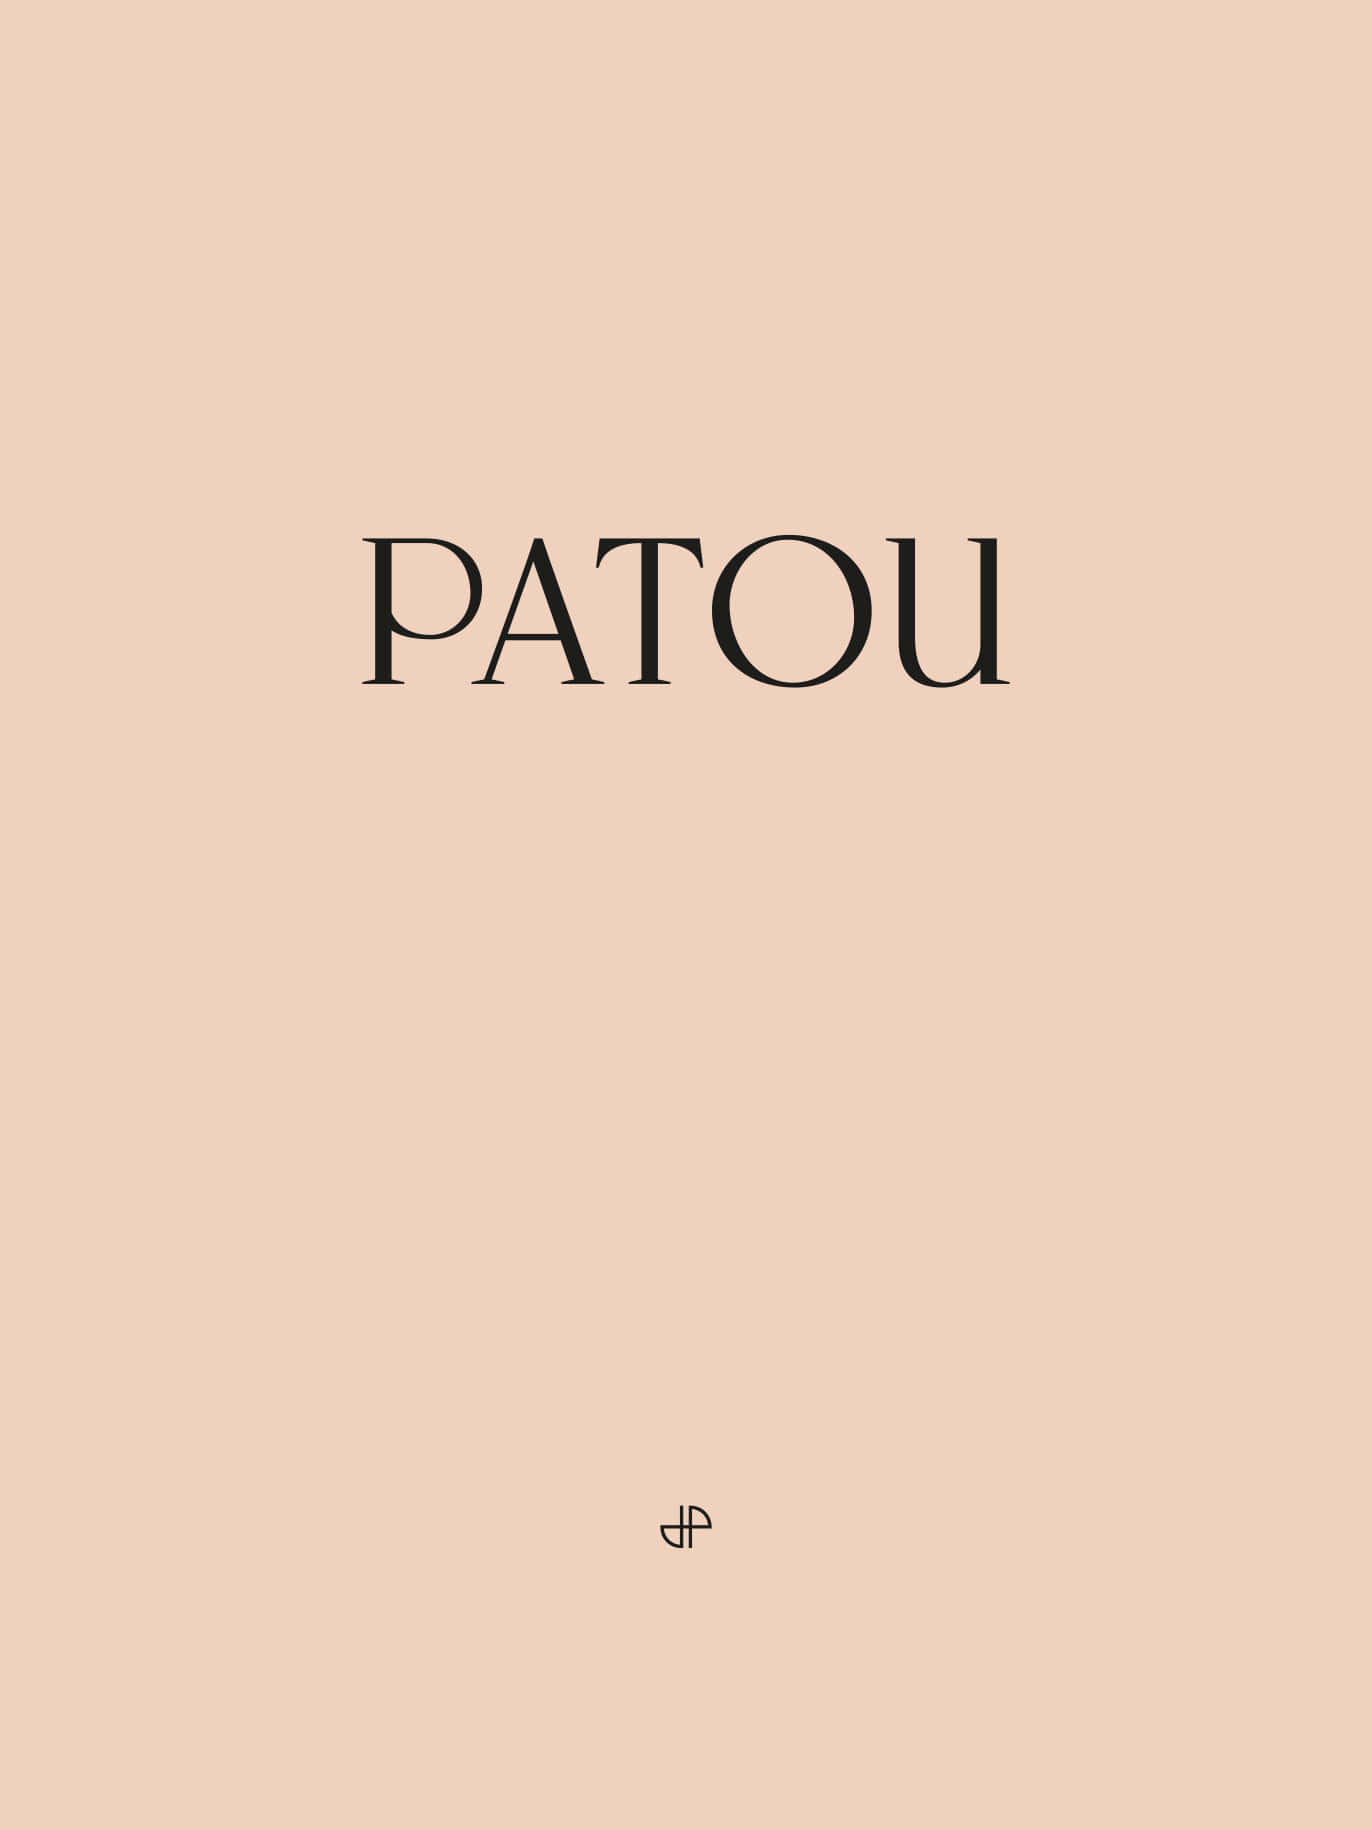 Patou 1372 X 1830 Wallpaper